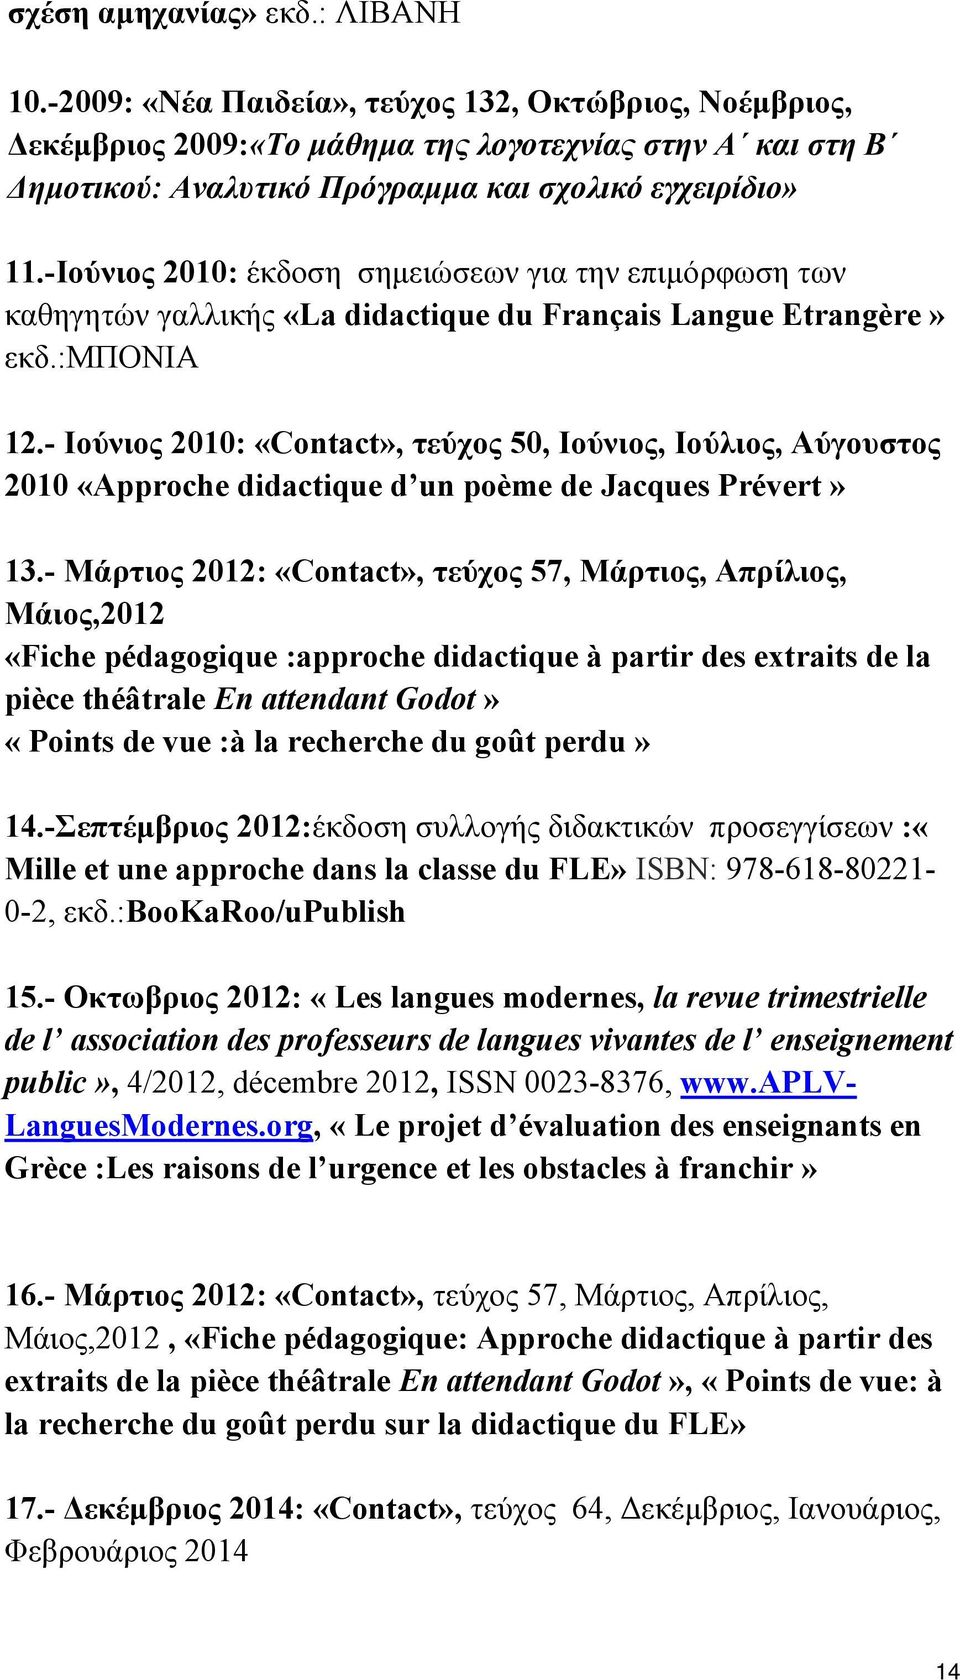 -Ιούνιος 2010: έκδοση σημειώσεων για την επιμόρφωση των καθηγητών γαλλικής «La didactique du Français Langue Etrangère» εκδ.:μπονια 12.